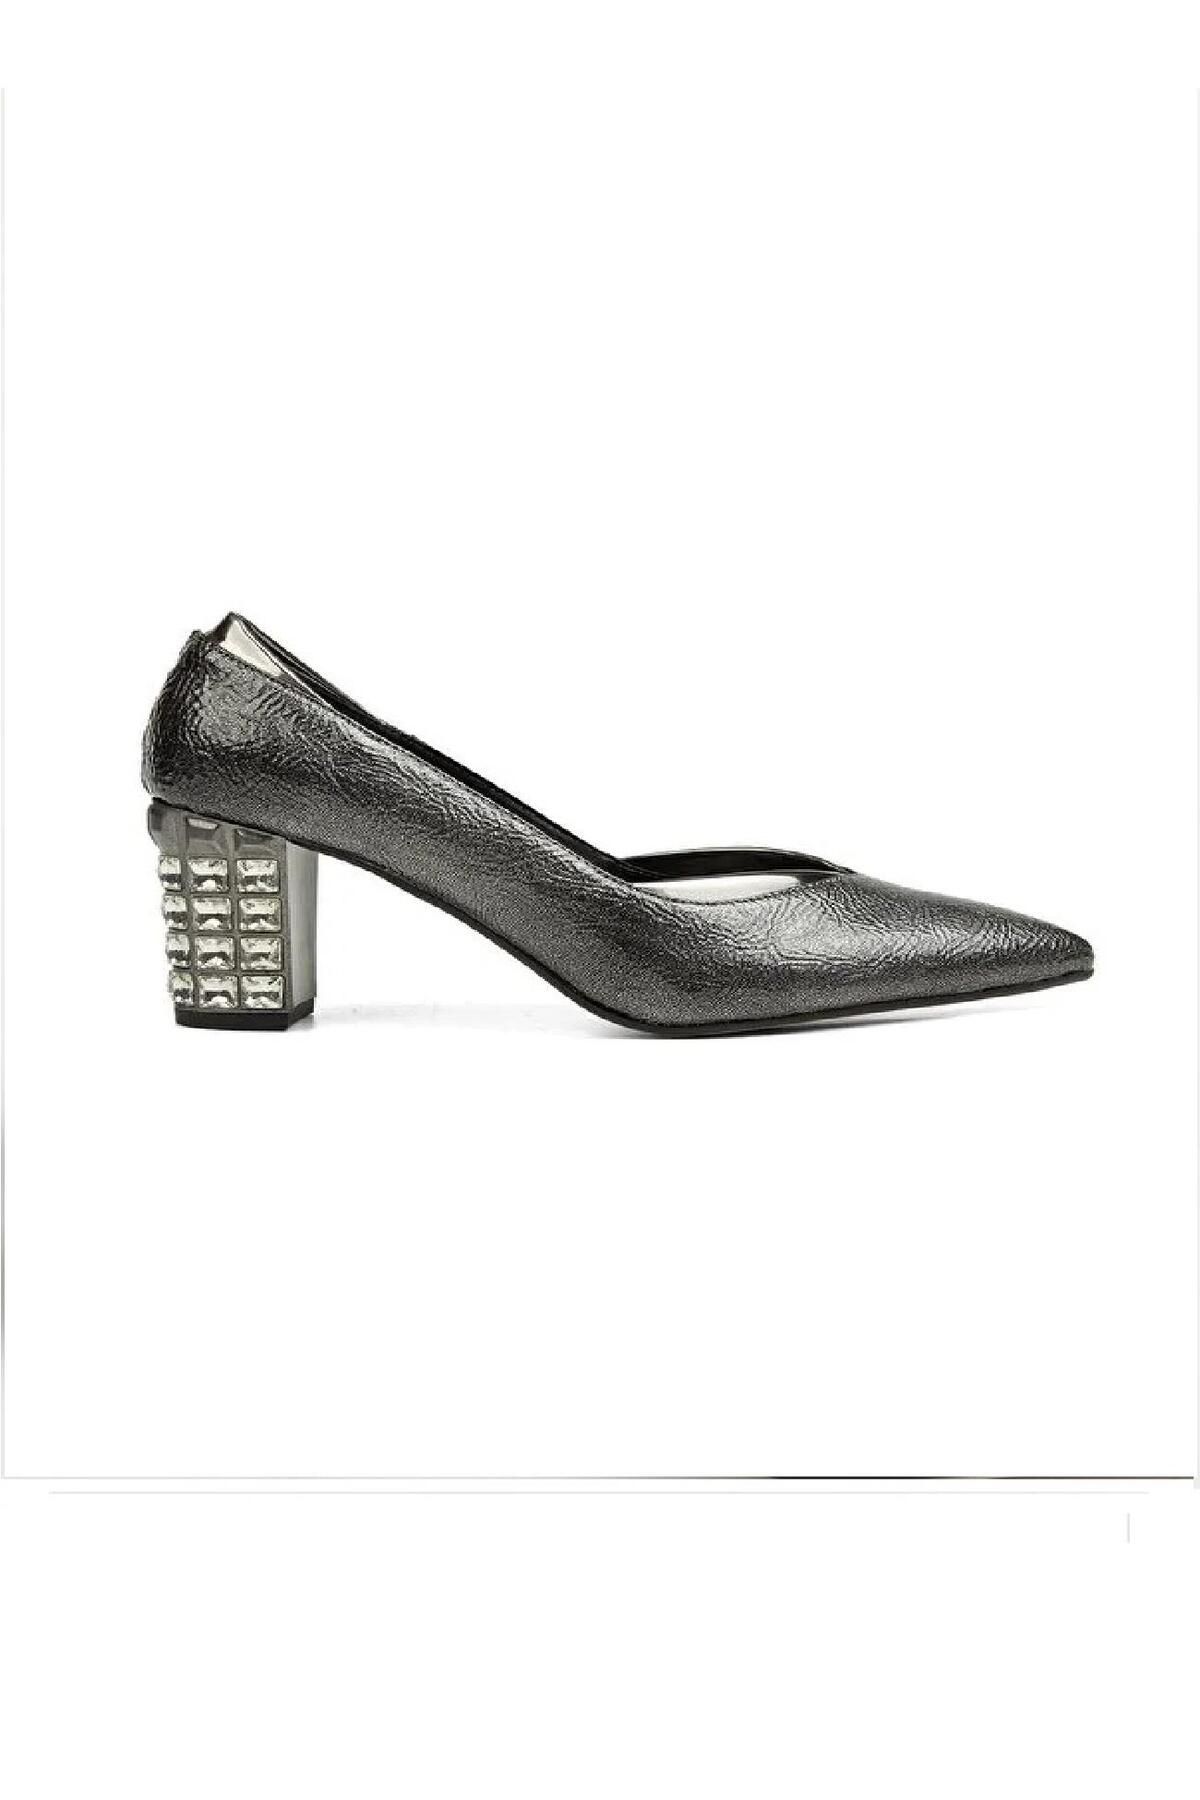 Pierre Cardin PC-52229 Platin Kadın Topuklu Ayakkabı